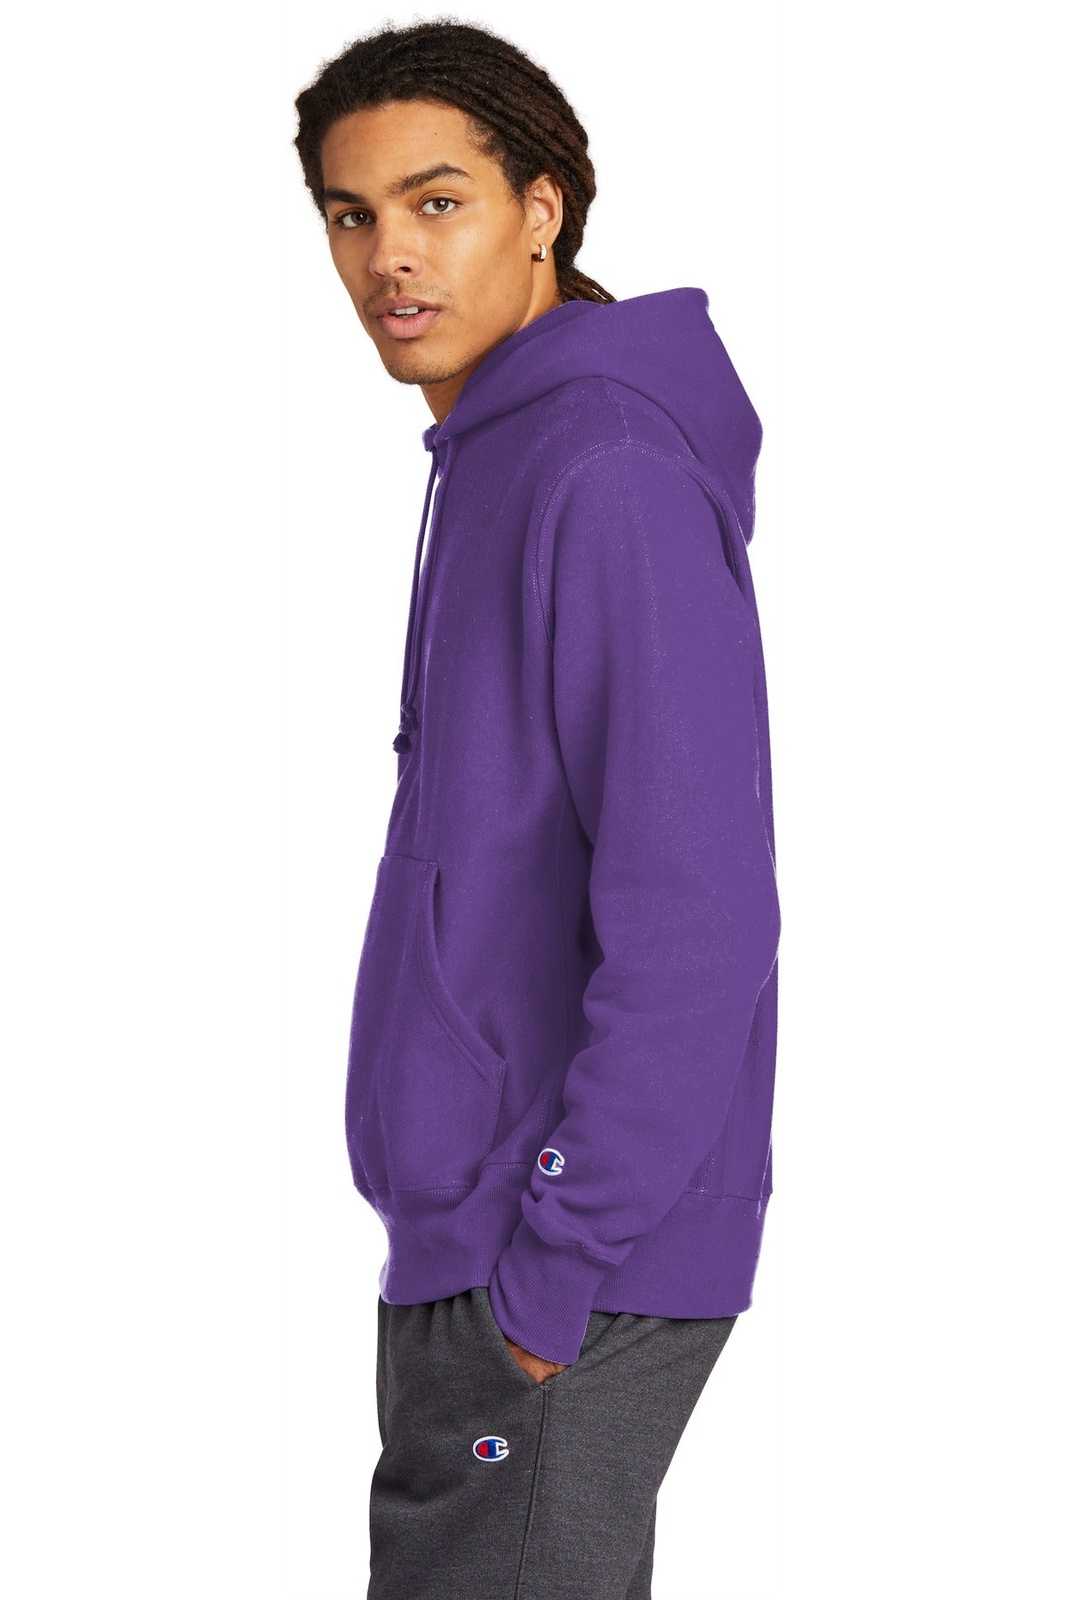 Champion S101 Reverse Weave Hooded Sweatshirt - Purple - HIT a Double